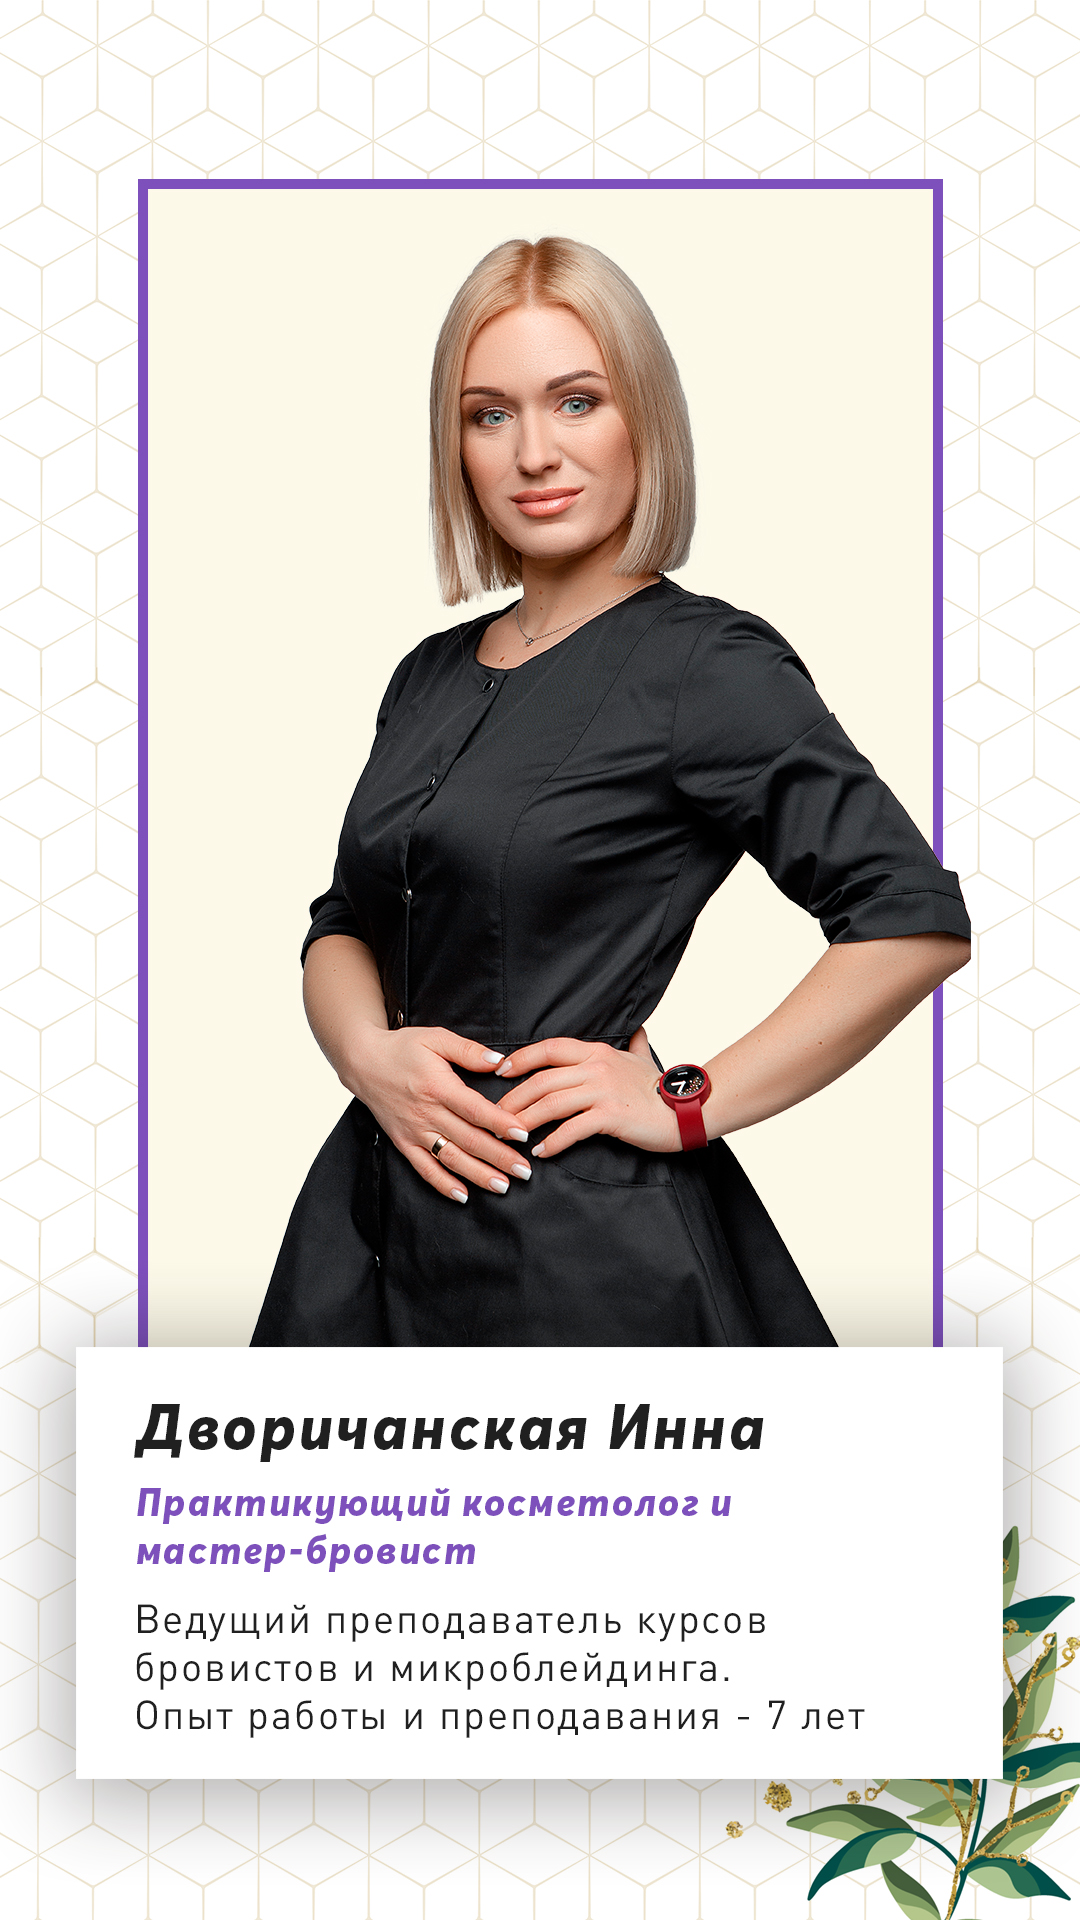 Преподаватель курсов бровистов и микроблейдинга Дворичанская Инна